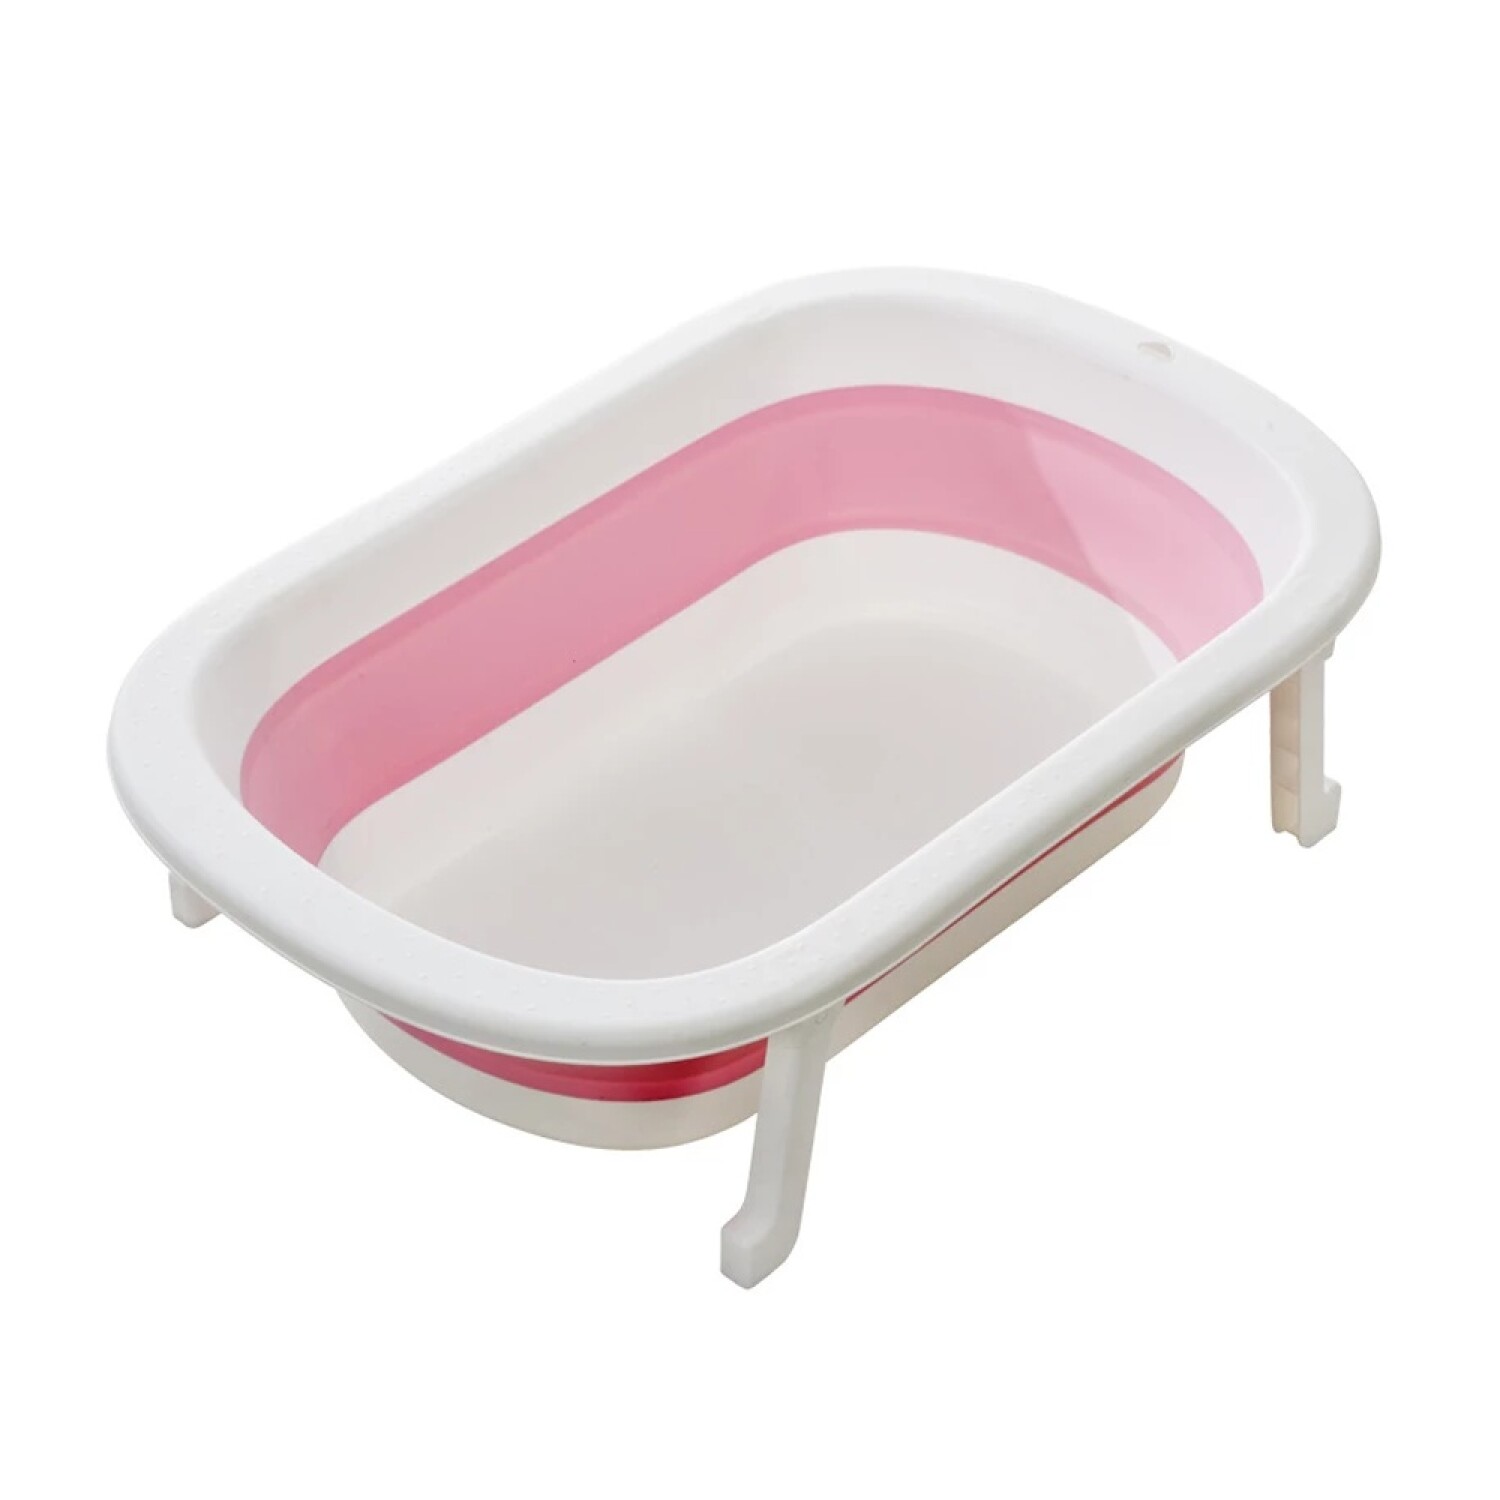  Bañera plegable para el hogar, bañera plegable para adultos,  bañera para niños, bañera para adultos, bañera plegable (color rosa,  tamaño: B) : Bebés